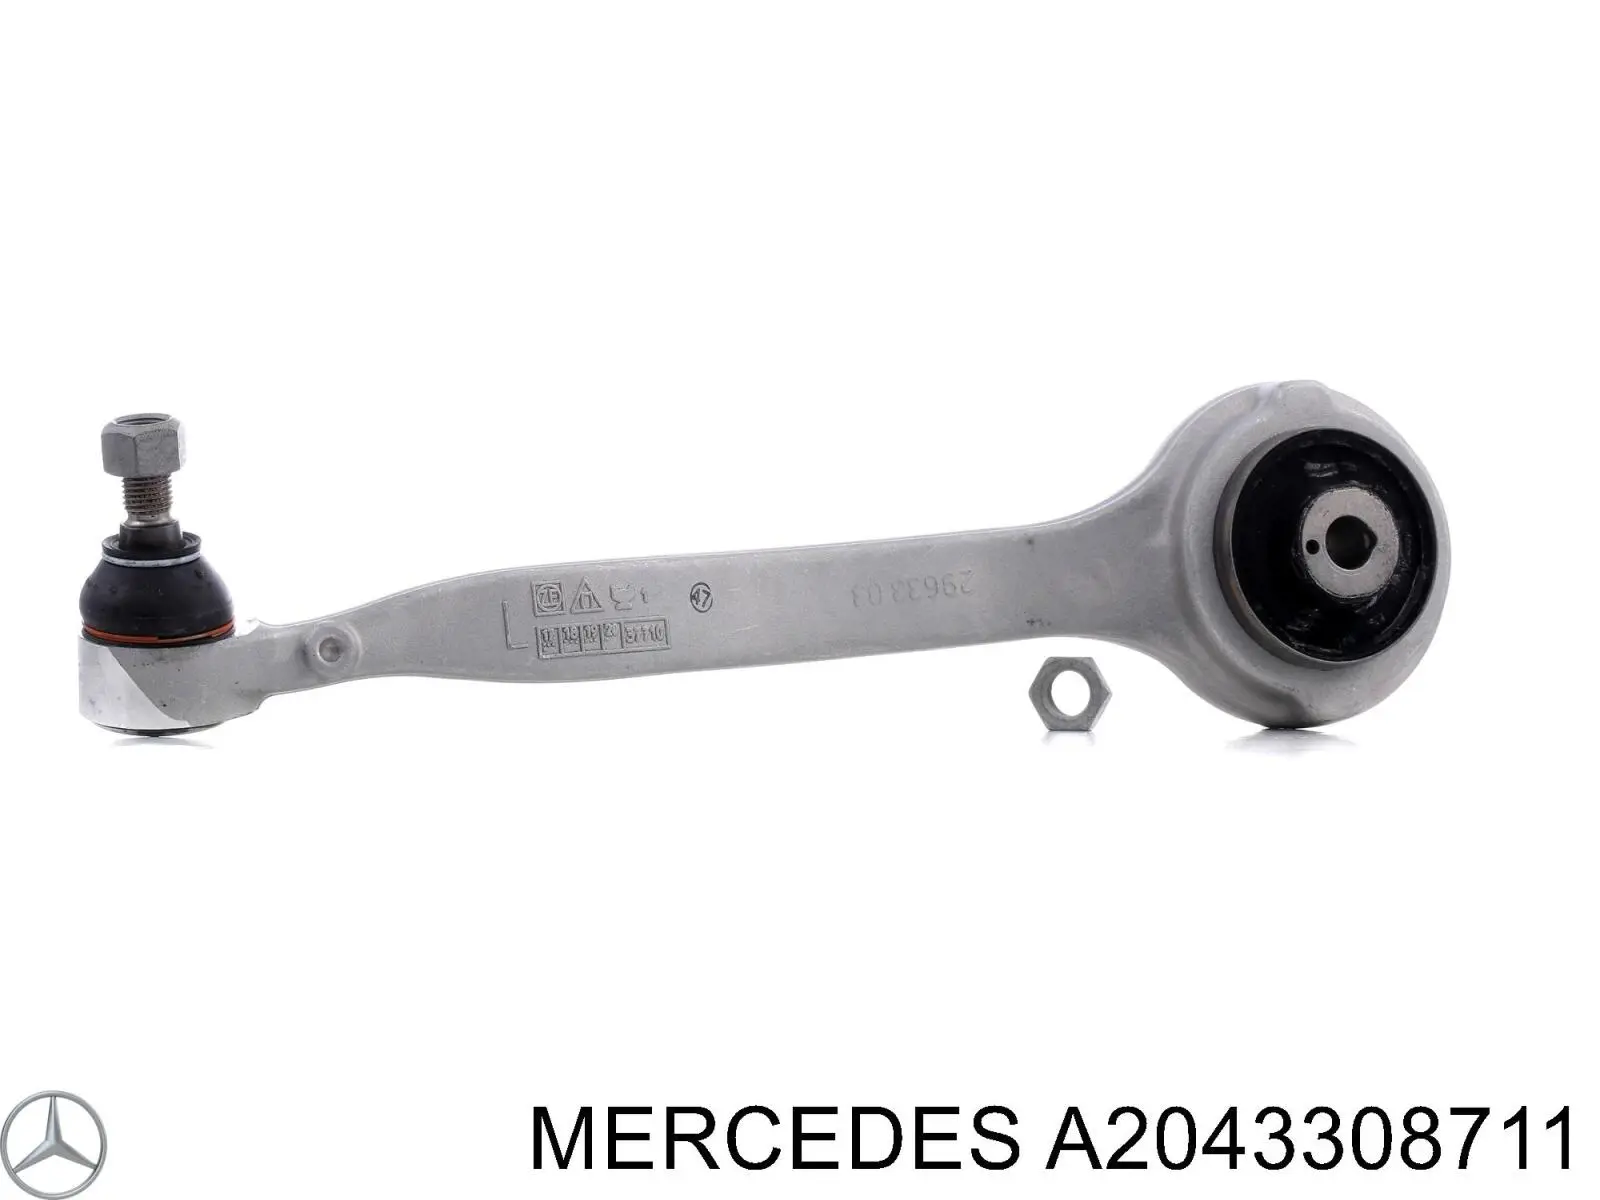 A2043308711 Mercedes braço oscilante superior esquerdo de suspensão dianteira